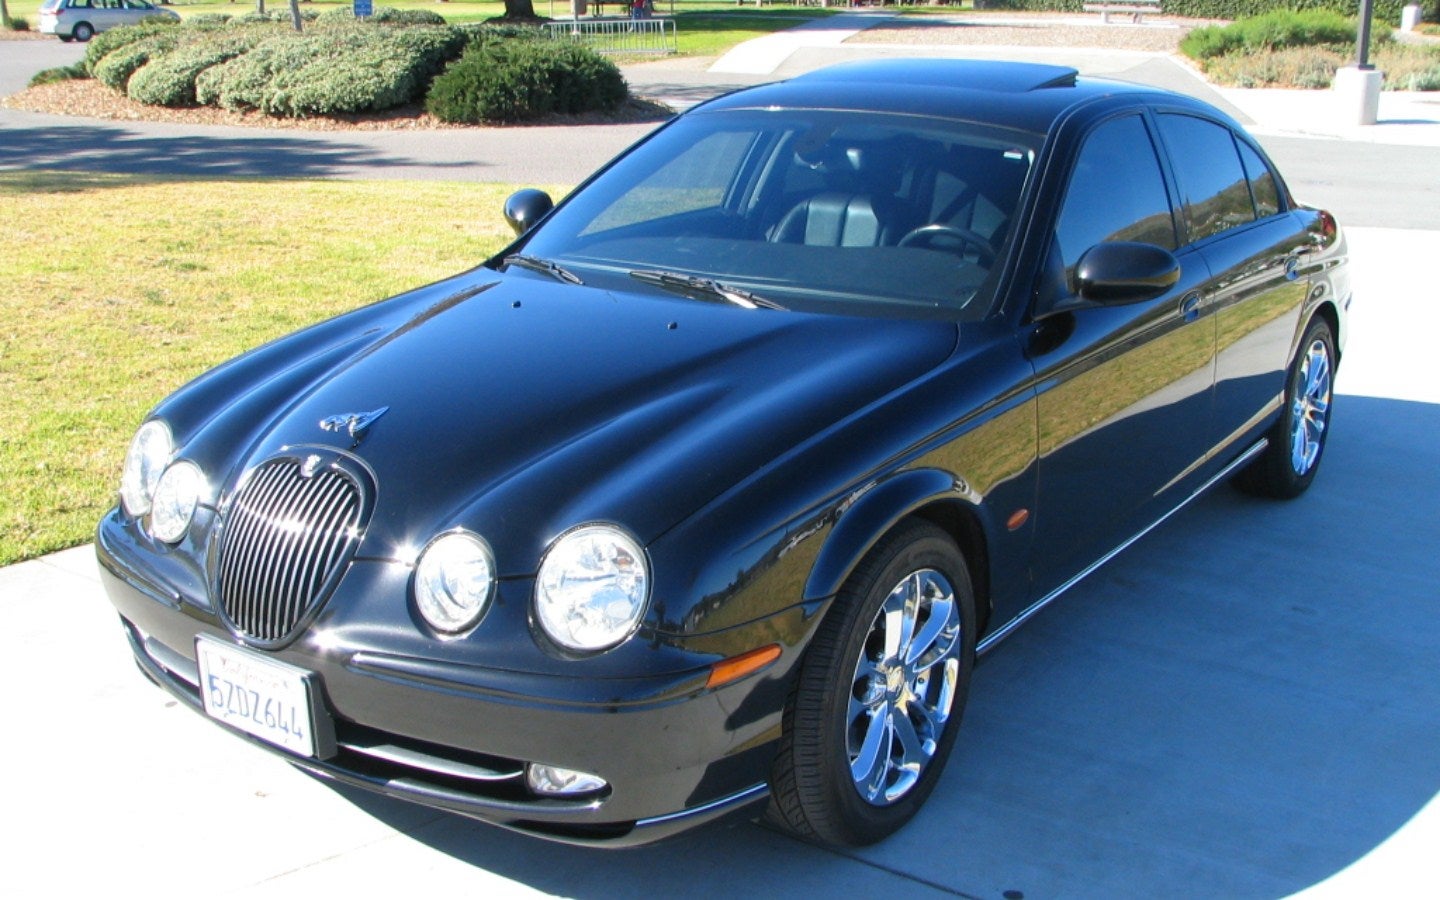 2003 Jaguar S-TYPE - Pictures - CarGurus